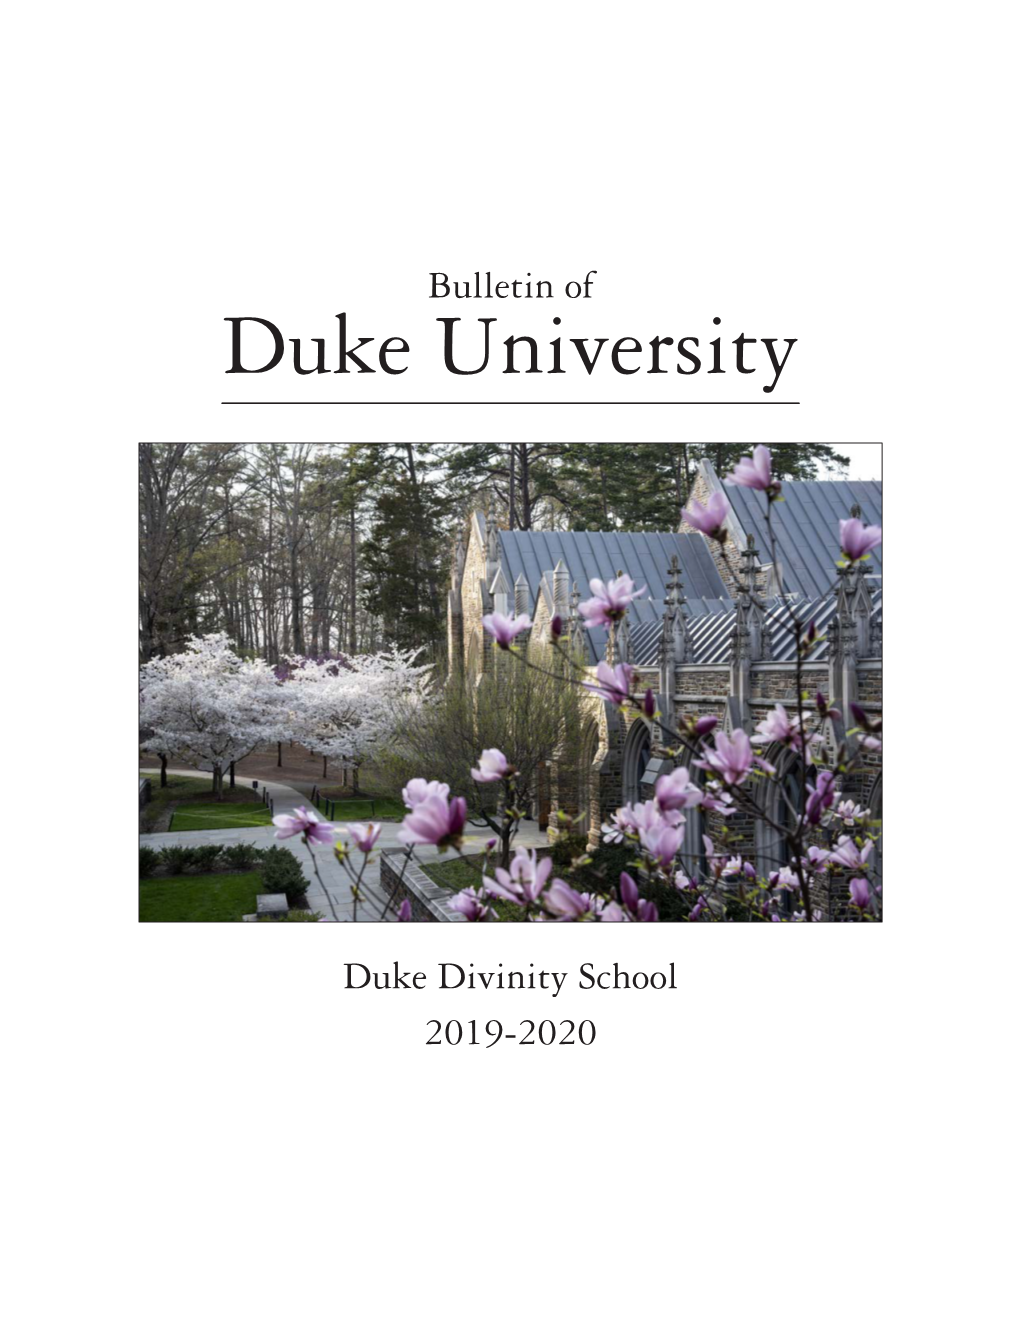 2019-20 Bulletin of Duke Divinity School